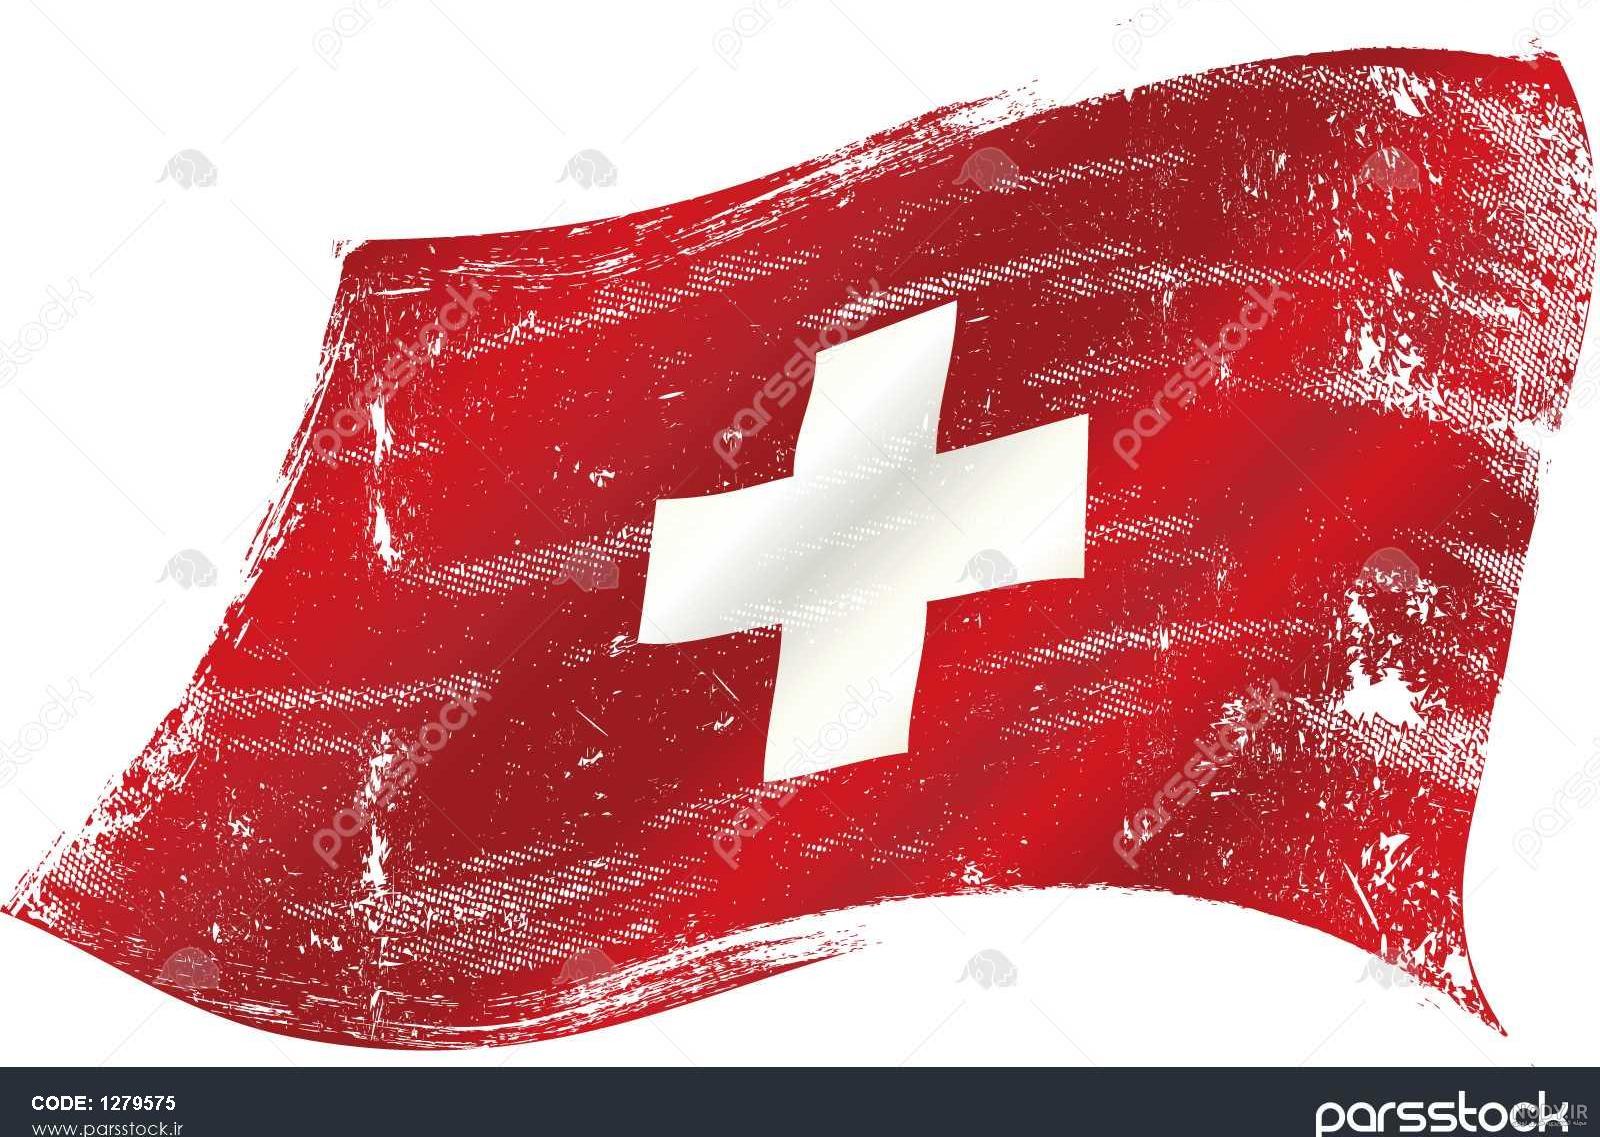 چرا سوئیس بهترین کشور است